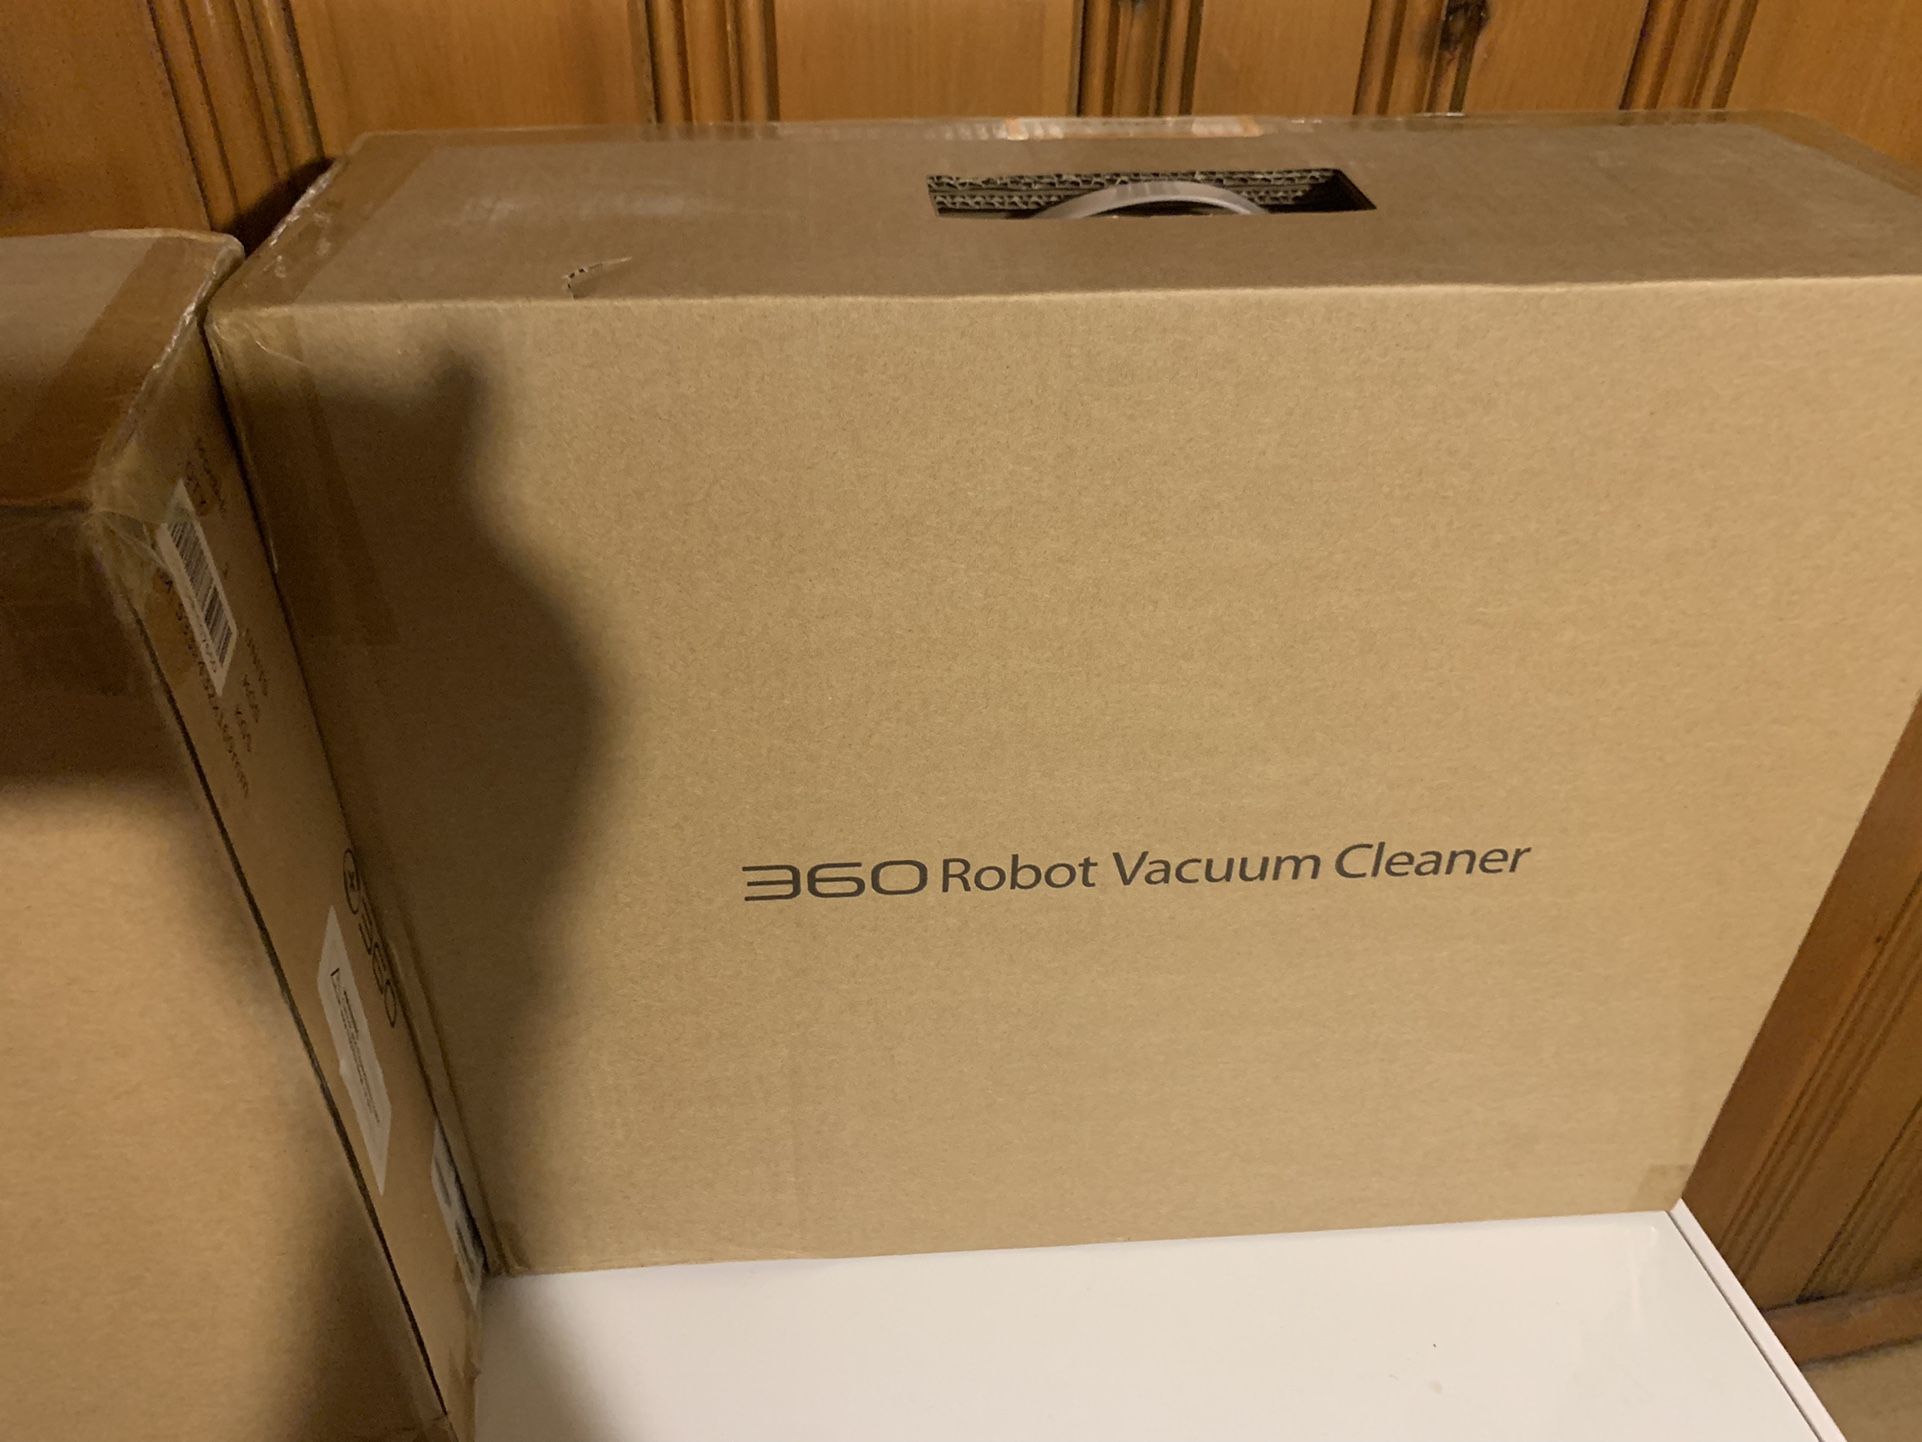 360 Robot Vacuum Cleaner